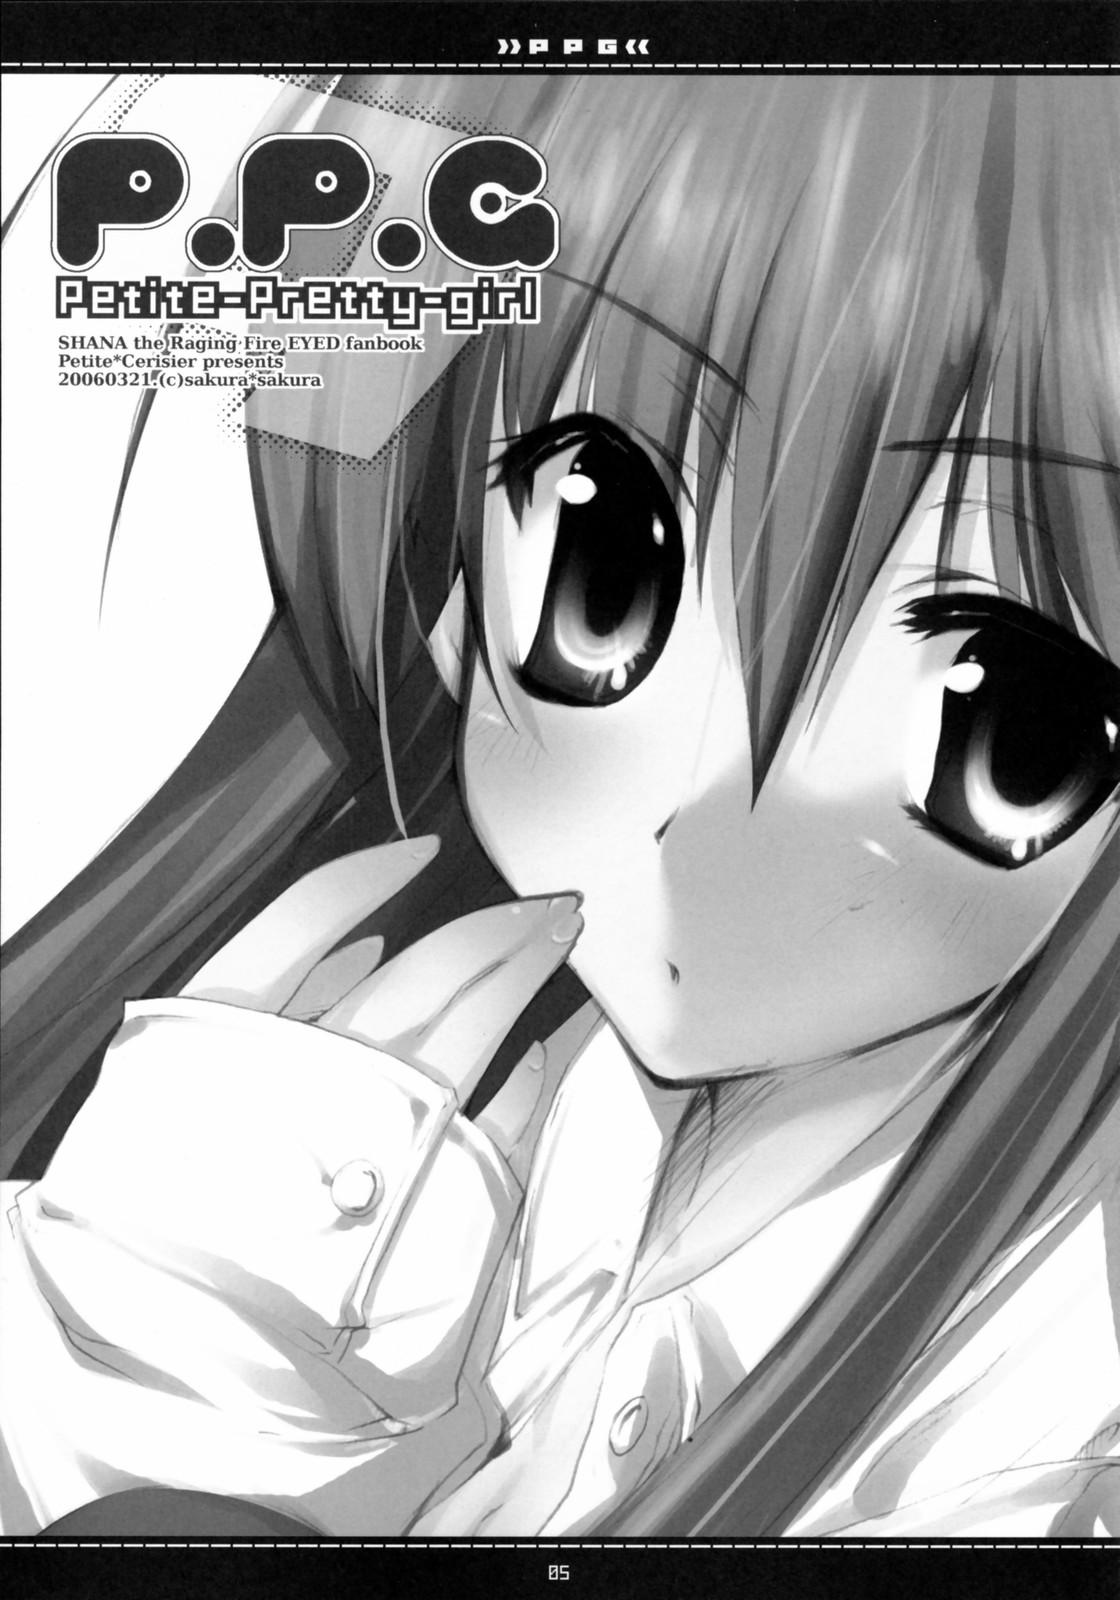 Girlsfucking (Suteki Kuukan 2) [Petite*Cerisier (Sakura*Sakura)] P.P.G. 9 Petite-Pretty-girl (Shakugan no Shana) - Shakugan no shana Calle - Page 2